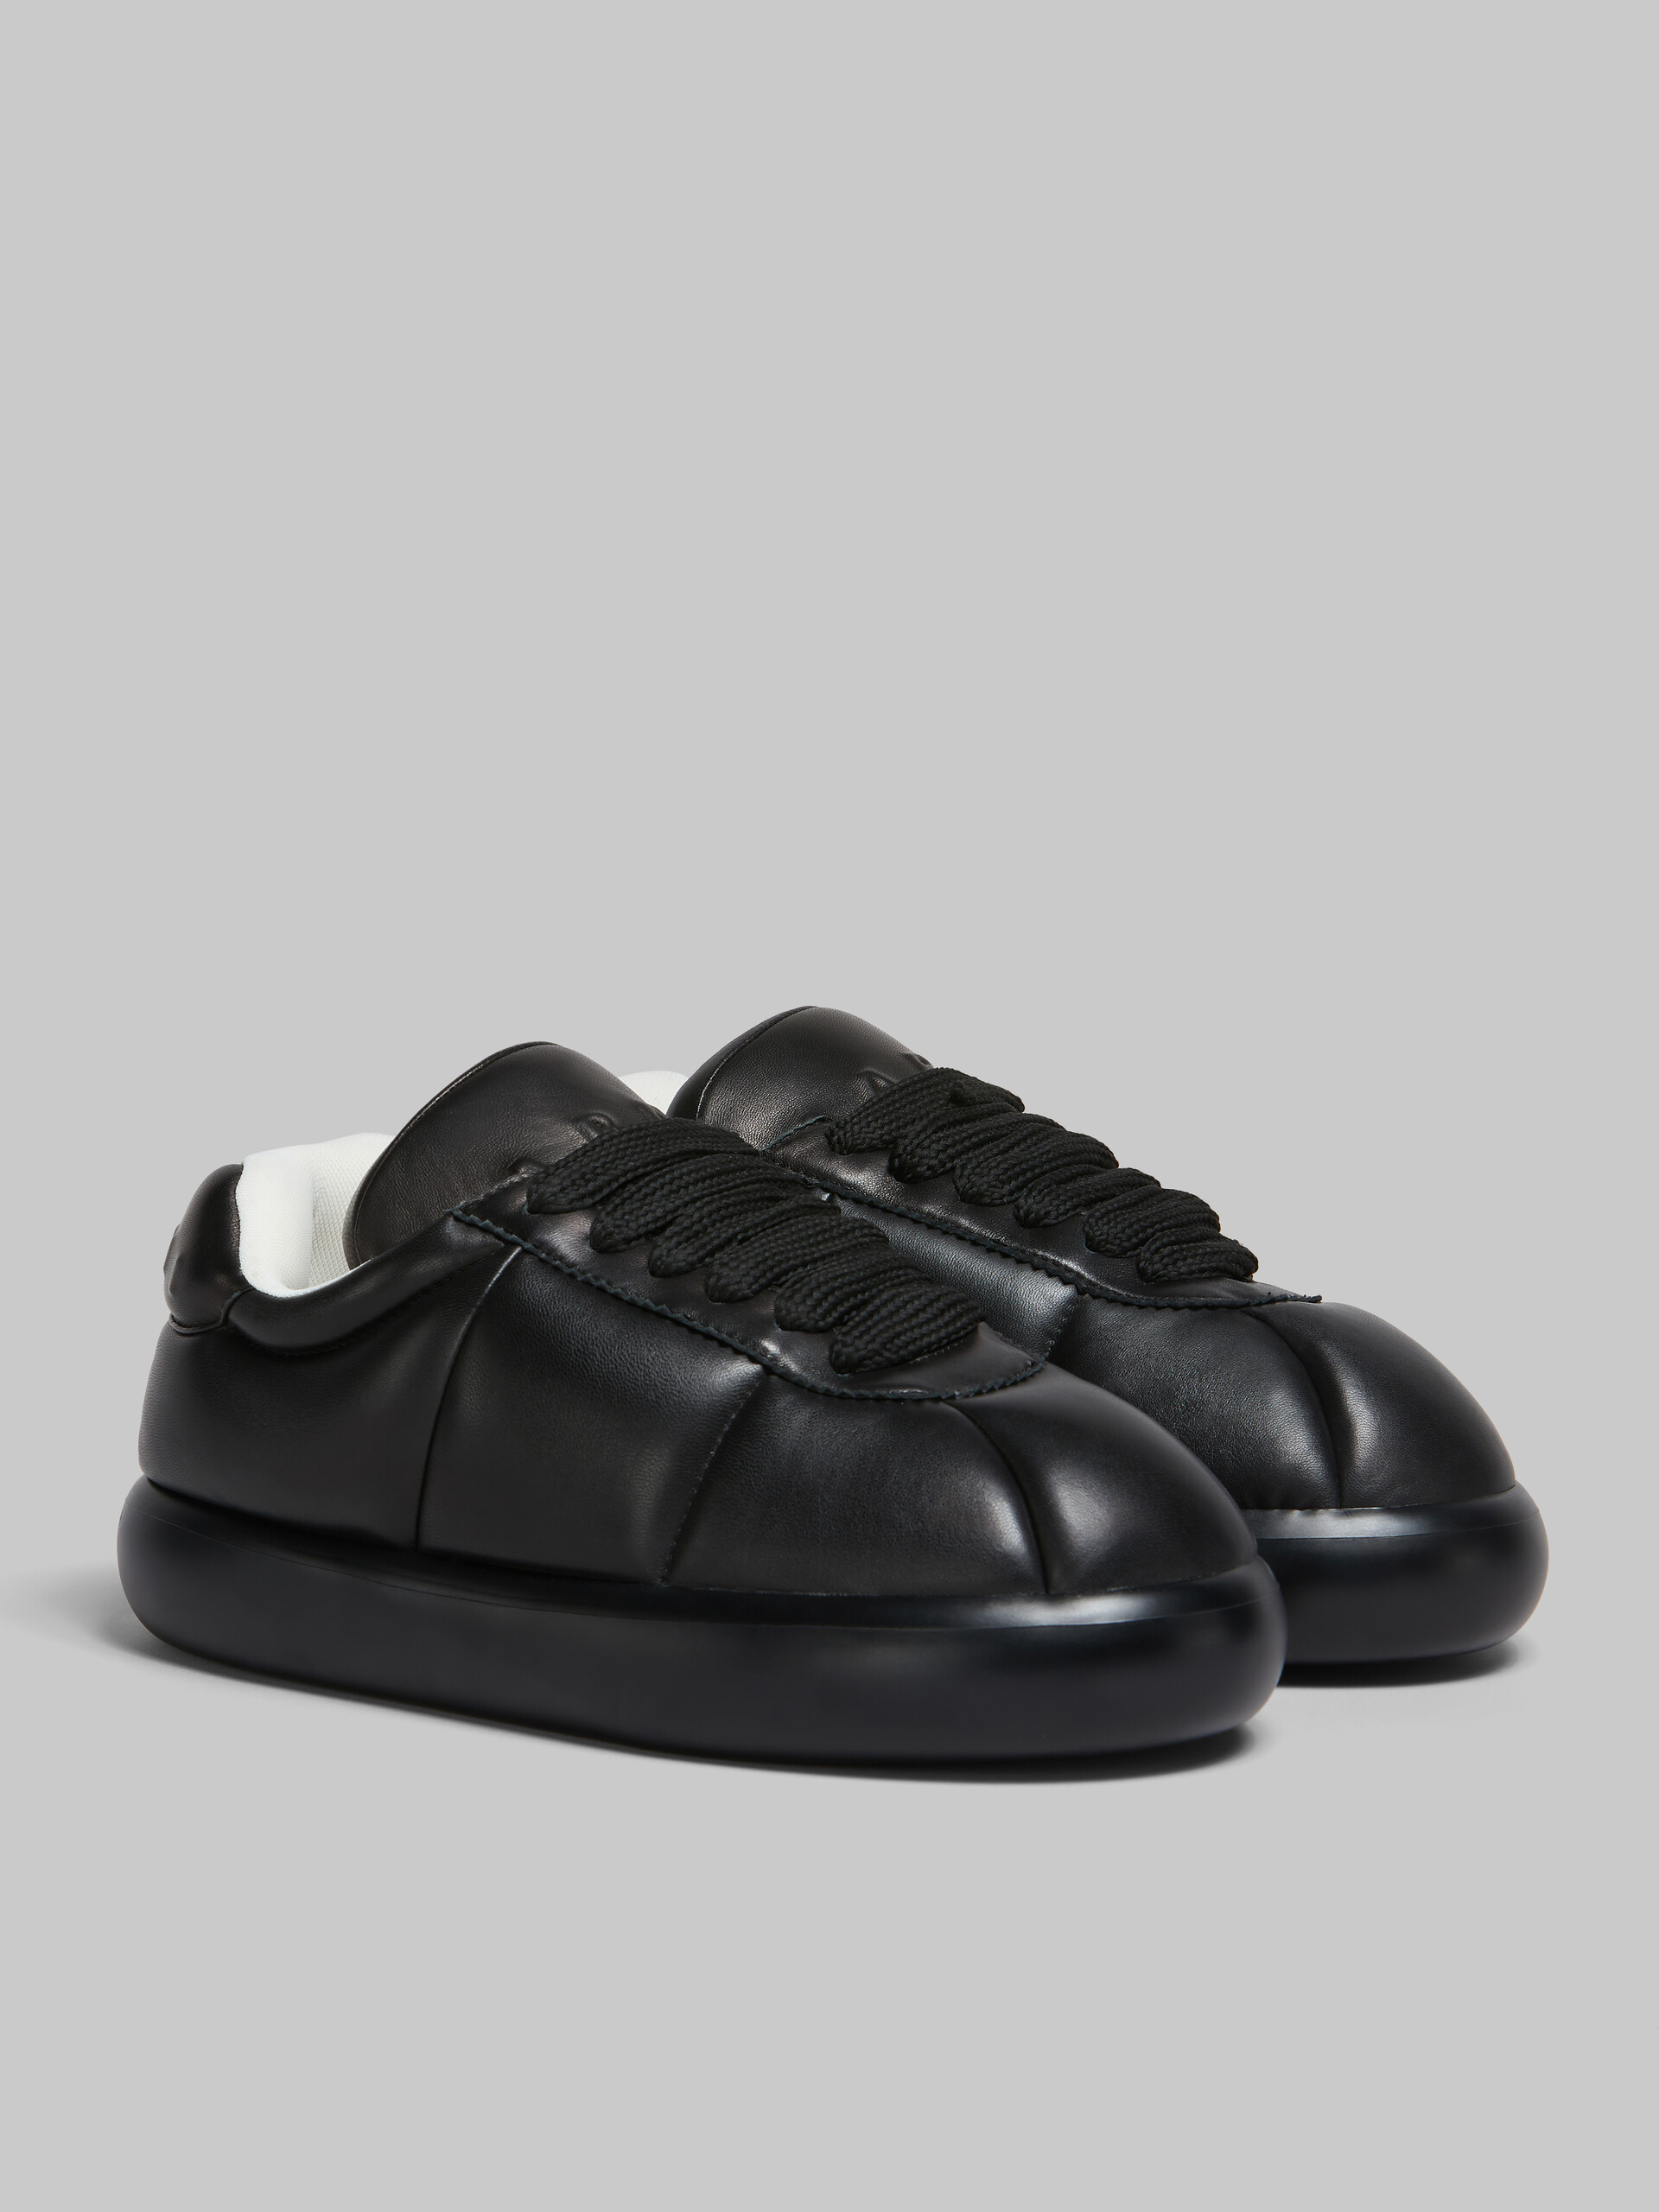 Sneakers BigFoot 2.0 en cuir noir - Sneakers - Image 2